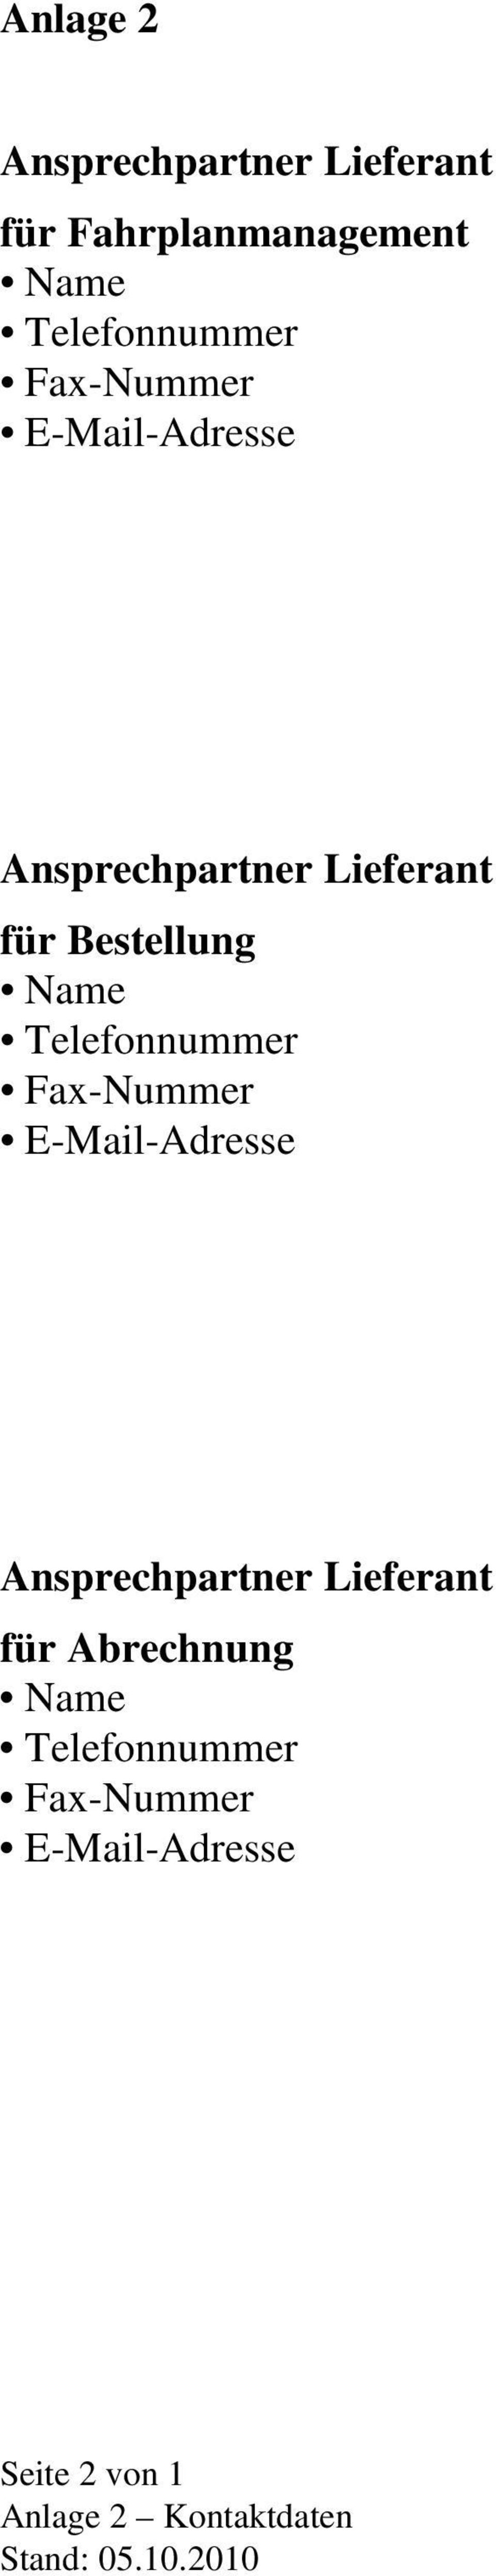 Telefonnummer Fax-Nummer Ansprechpartner Lieferant für Abrechnung Name